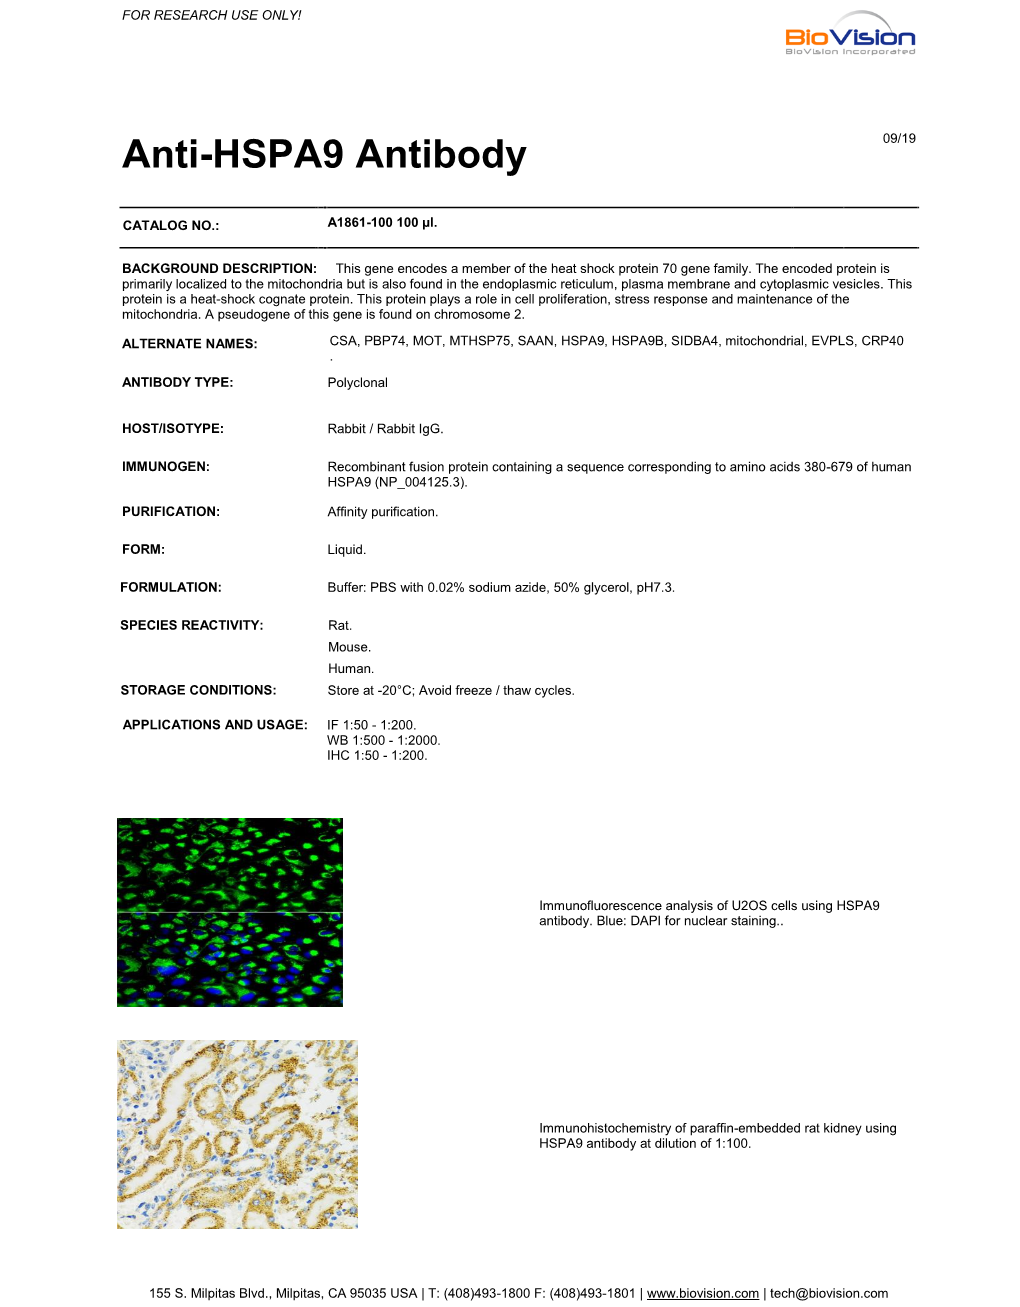 Anti-HSPA9 Antibody